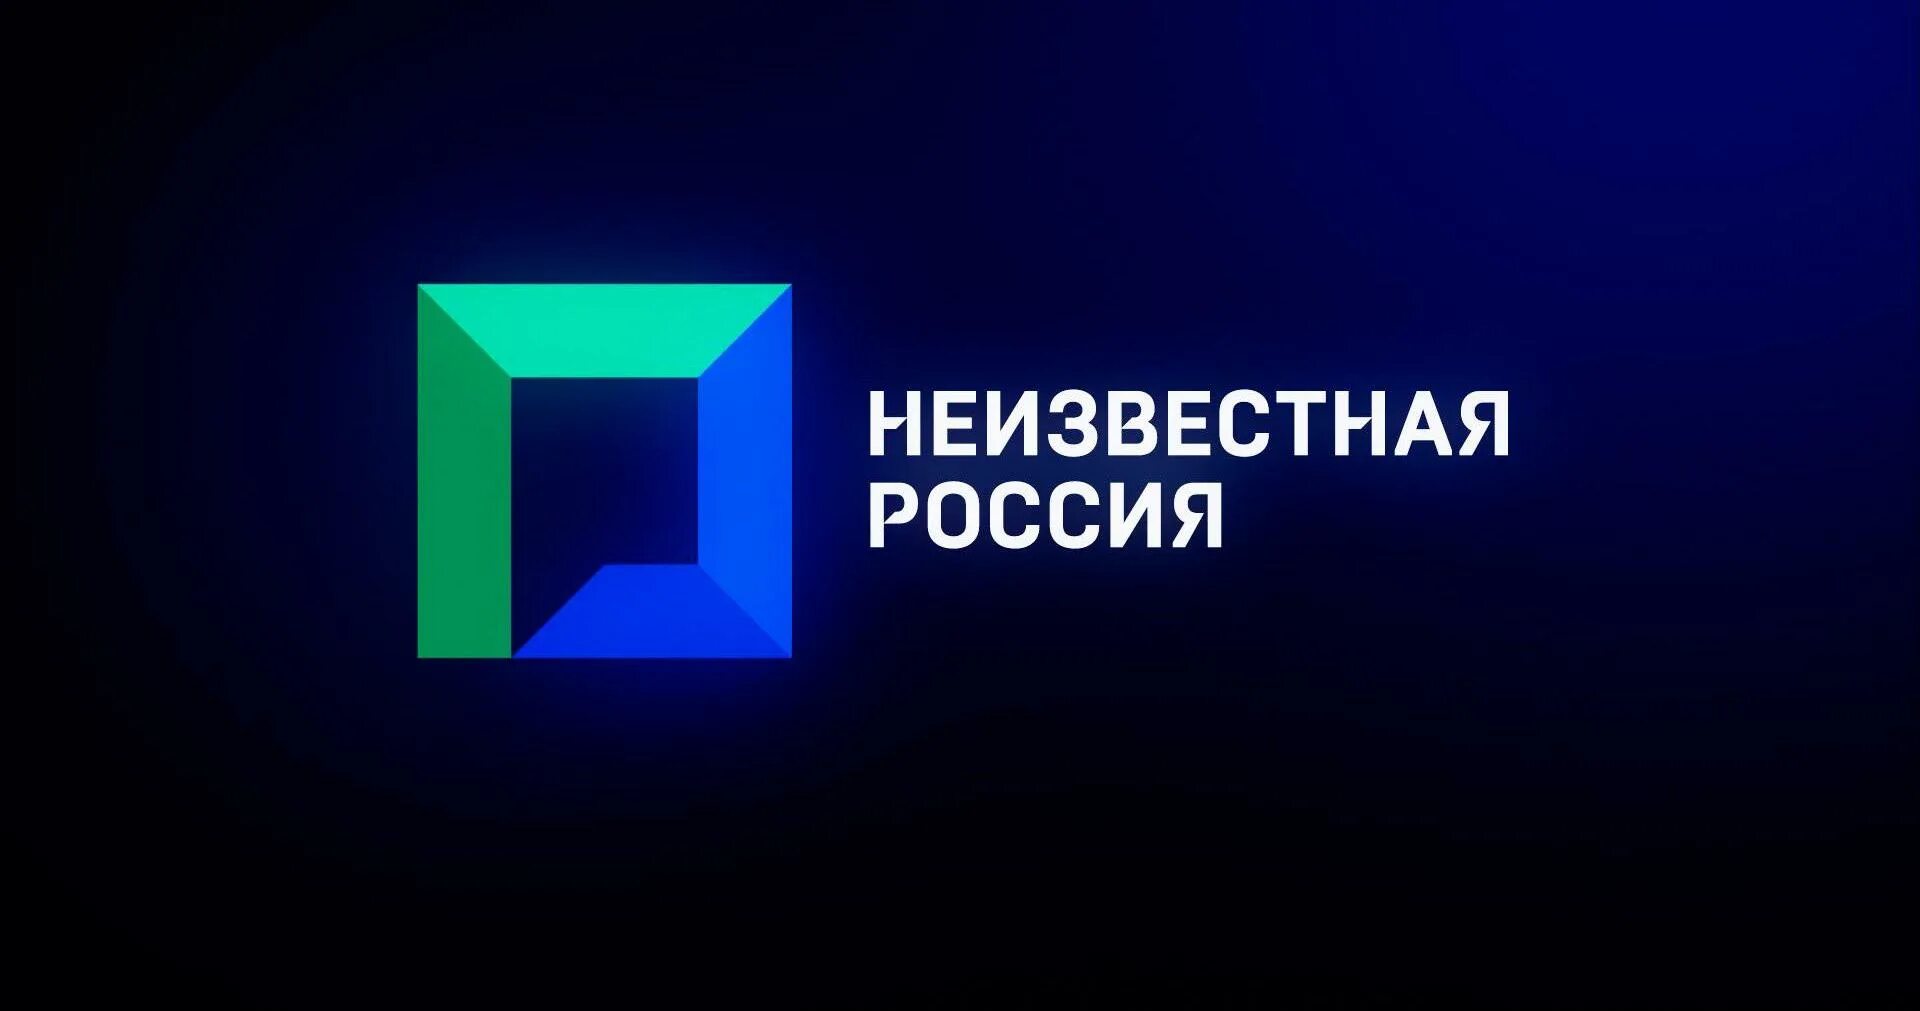 Новый канал россия. Логотип Неизвестная Россия. Эмблема неизвестного телеканала. Неизвестный Телеканал.